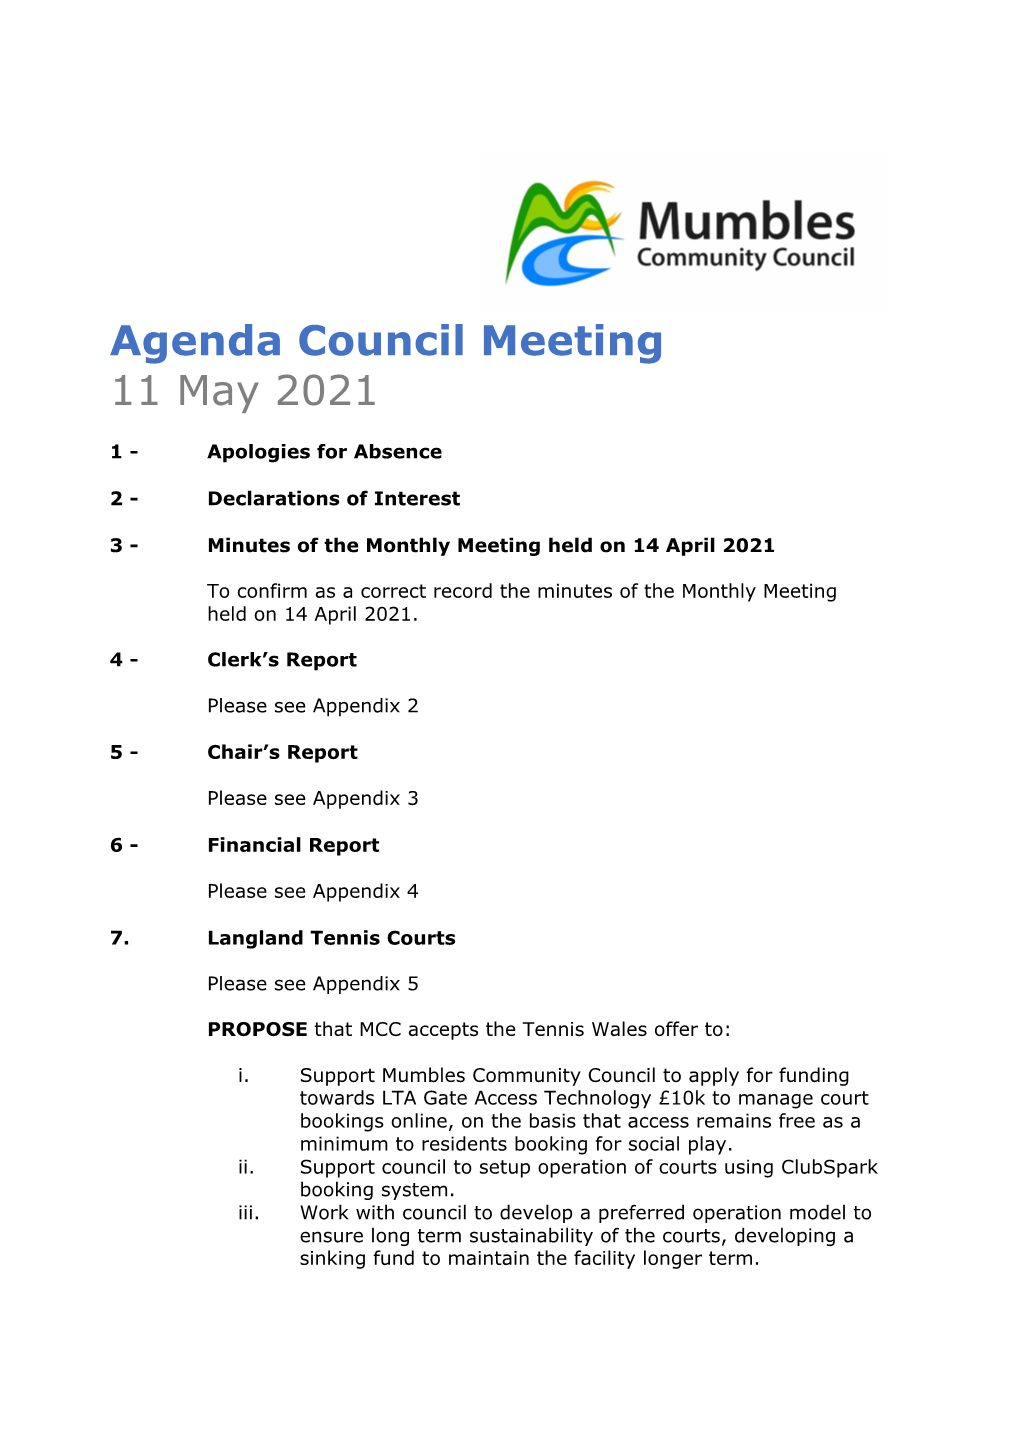 Agenda Council Meeting 11 May 2021